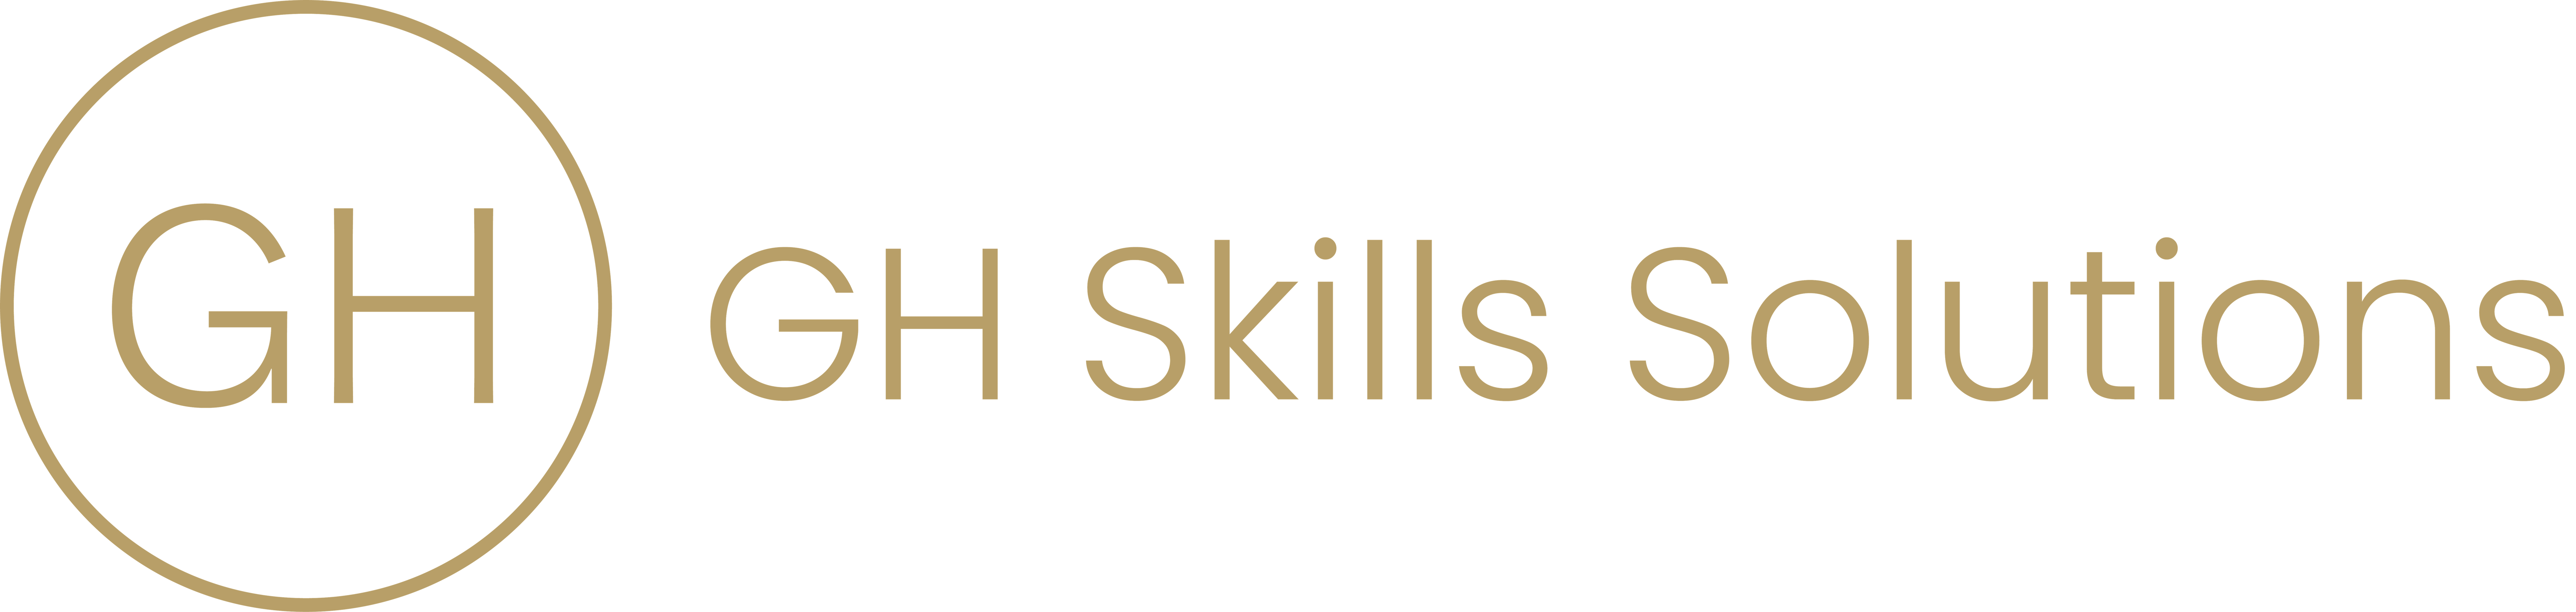 GH Skills Solutions Full Logo